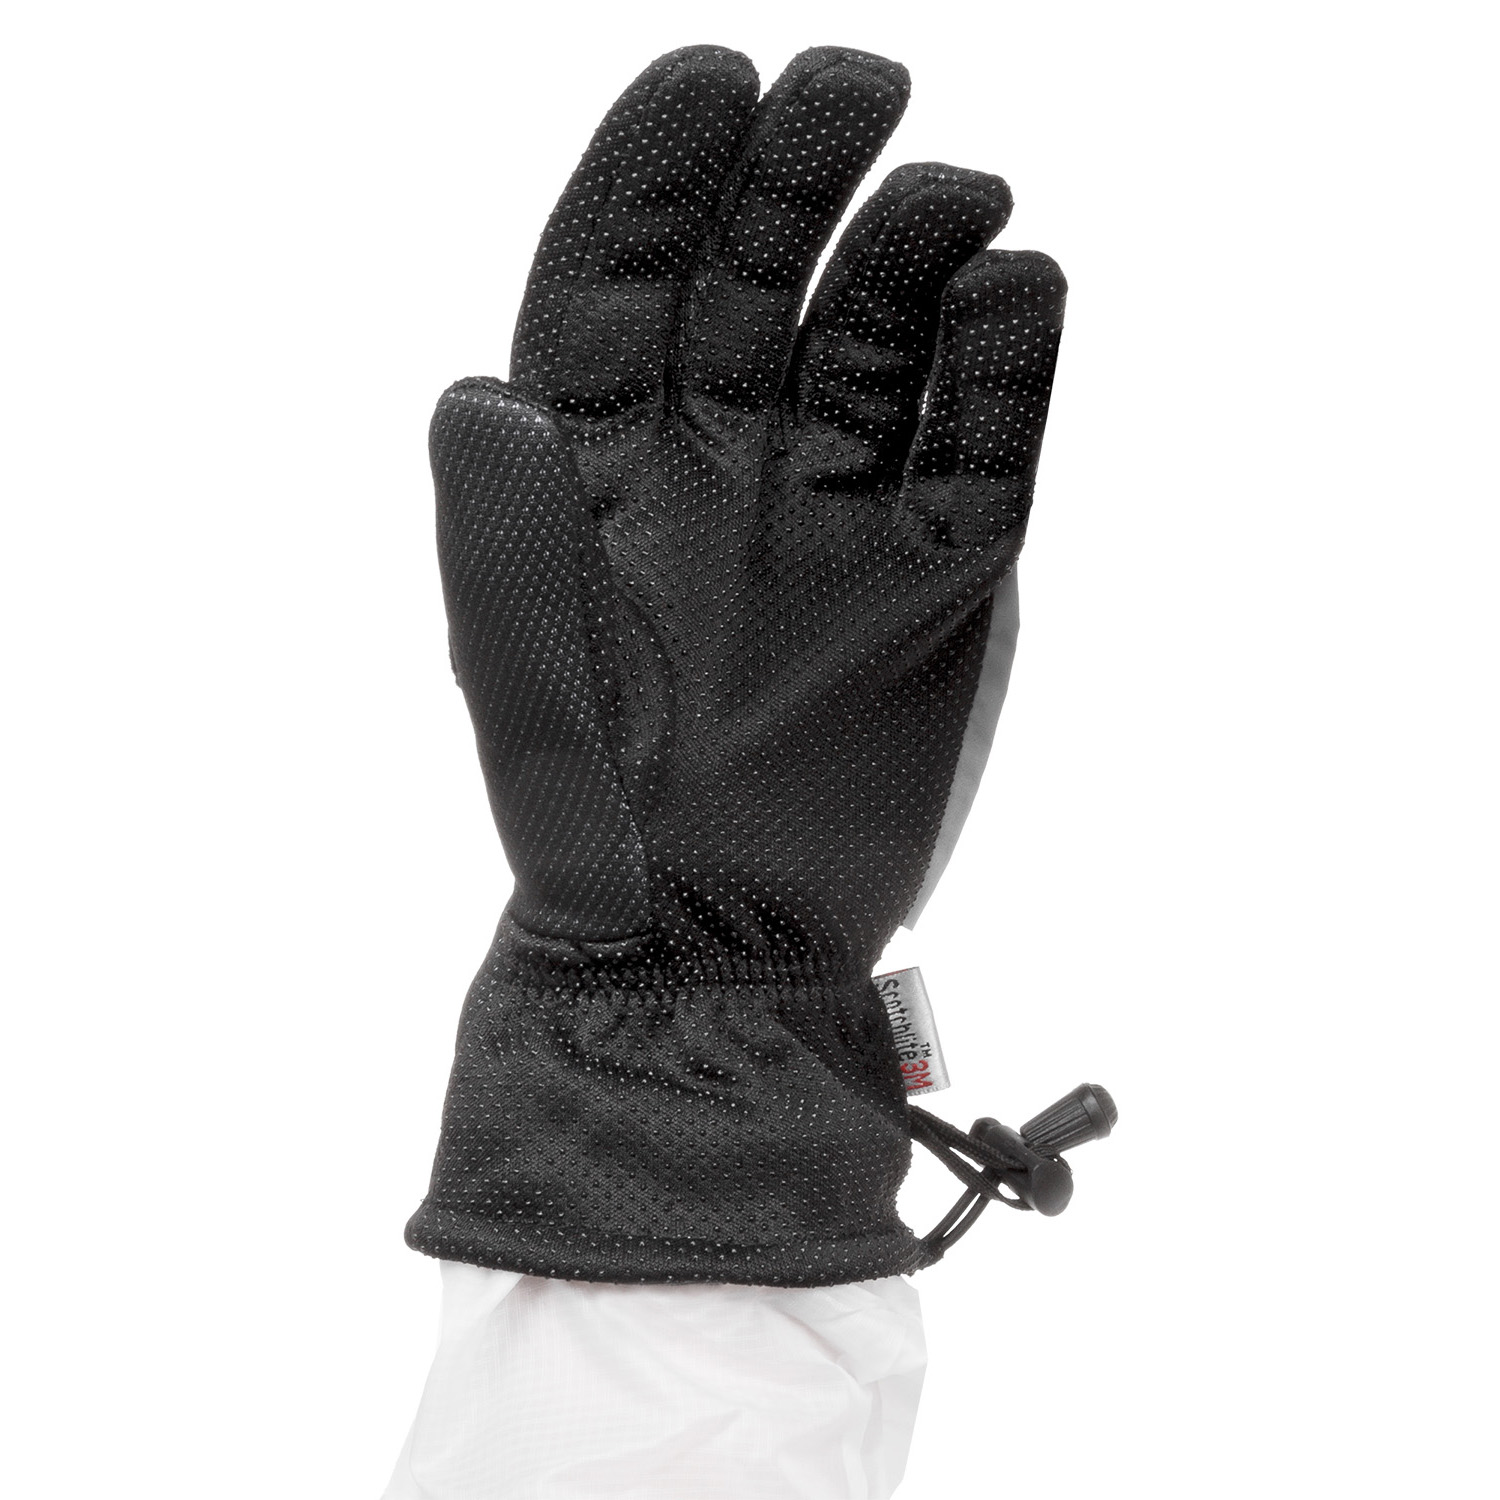 Winter Handschuh Gr. S/M in Schwarz/Anthrazit